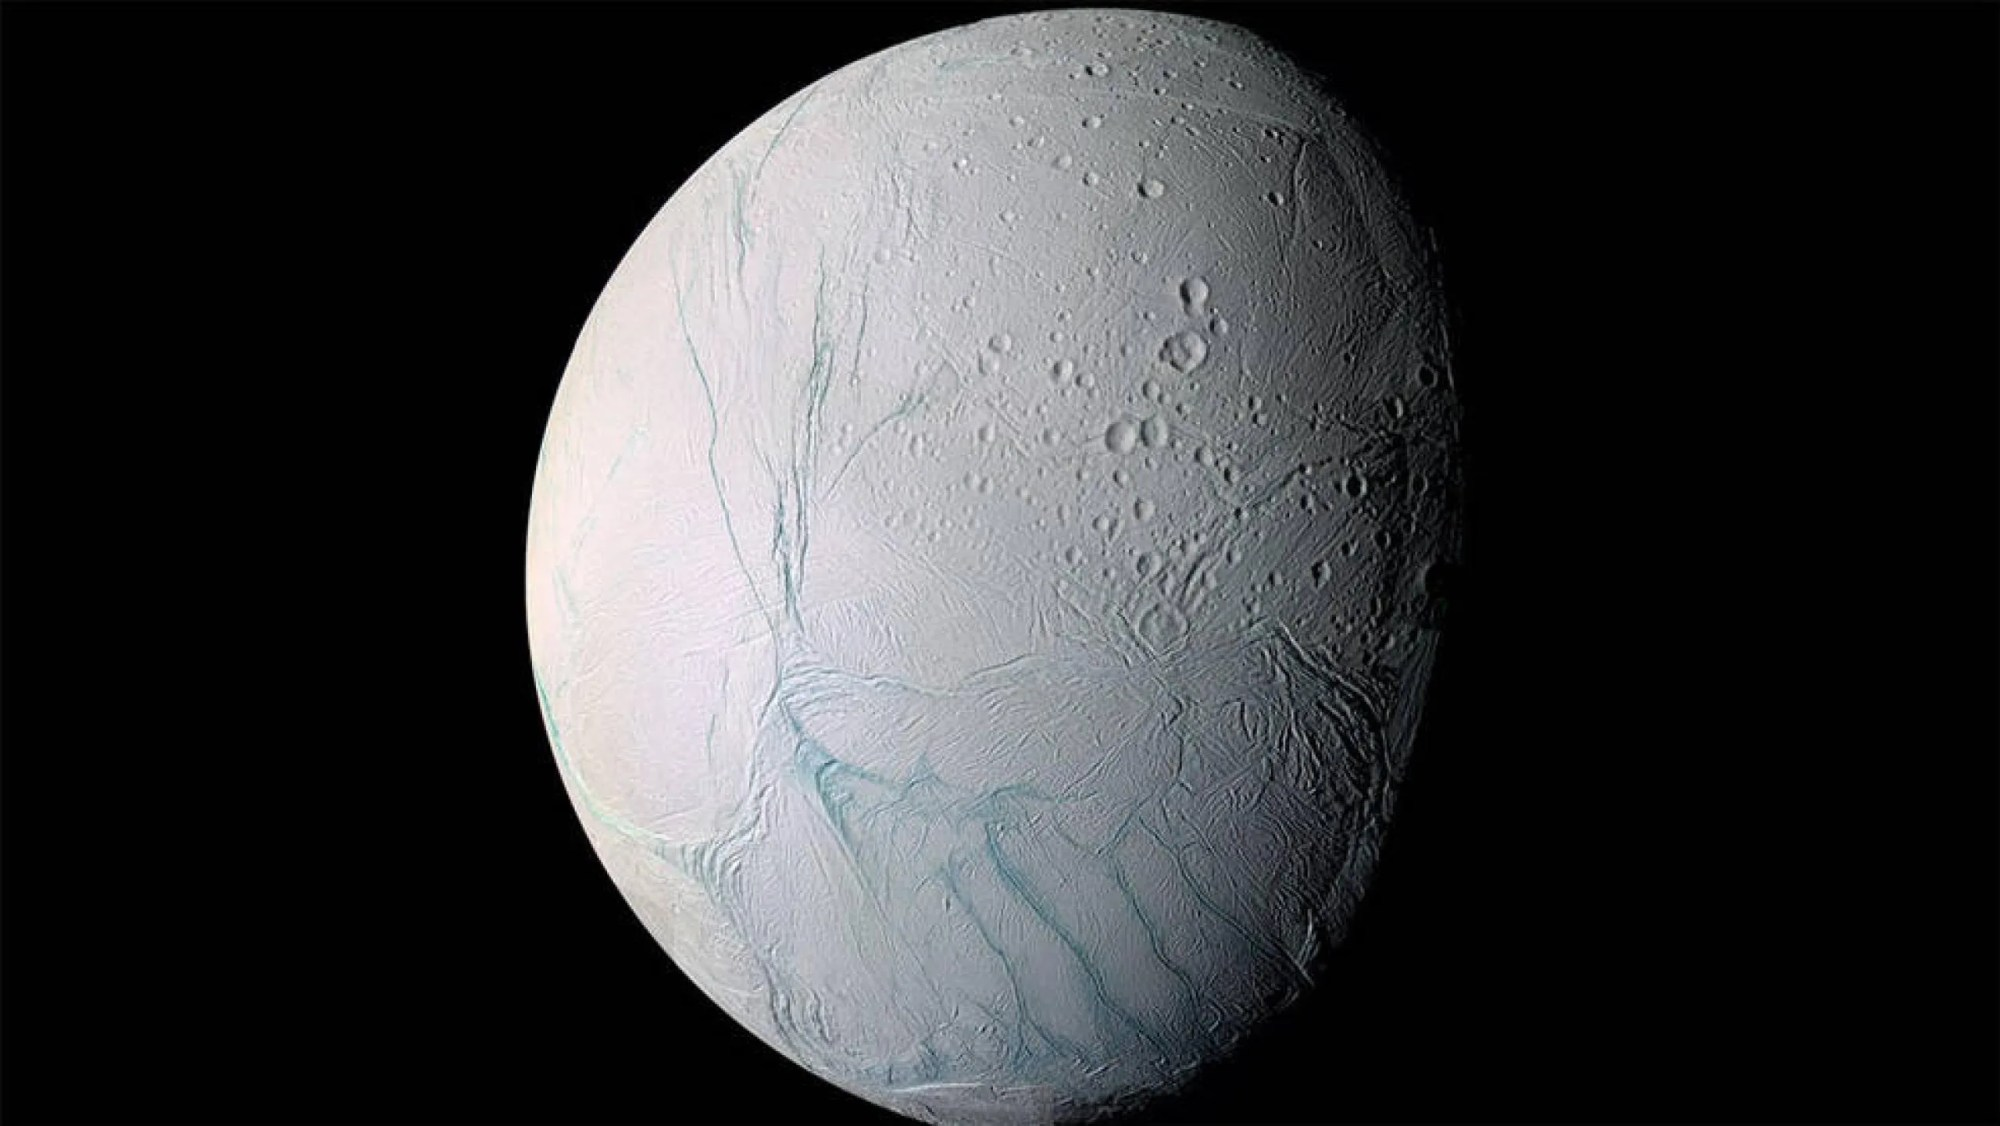 La corteza de hielo en el polo sur de Encélado muestra grandes fisuras que permiten que el agua del océano debajo de su superficie salga rociada al espacio en forma de géiseres, formando una columna de partículas congeladas.